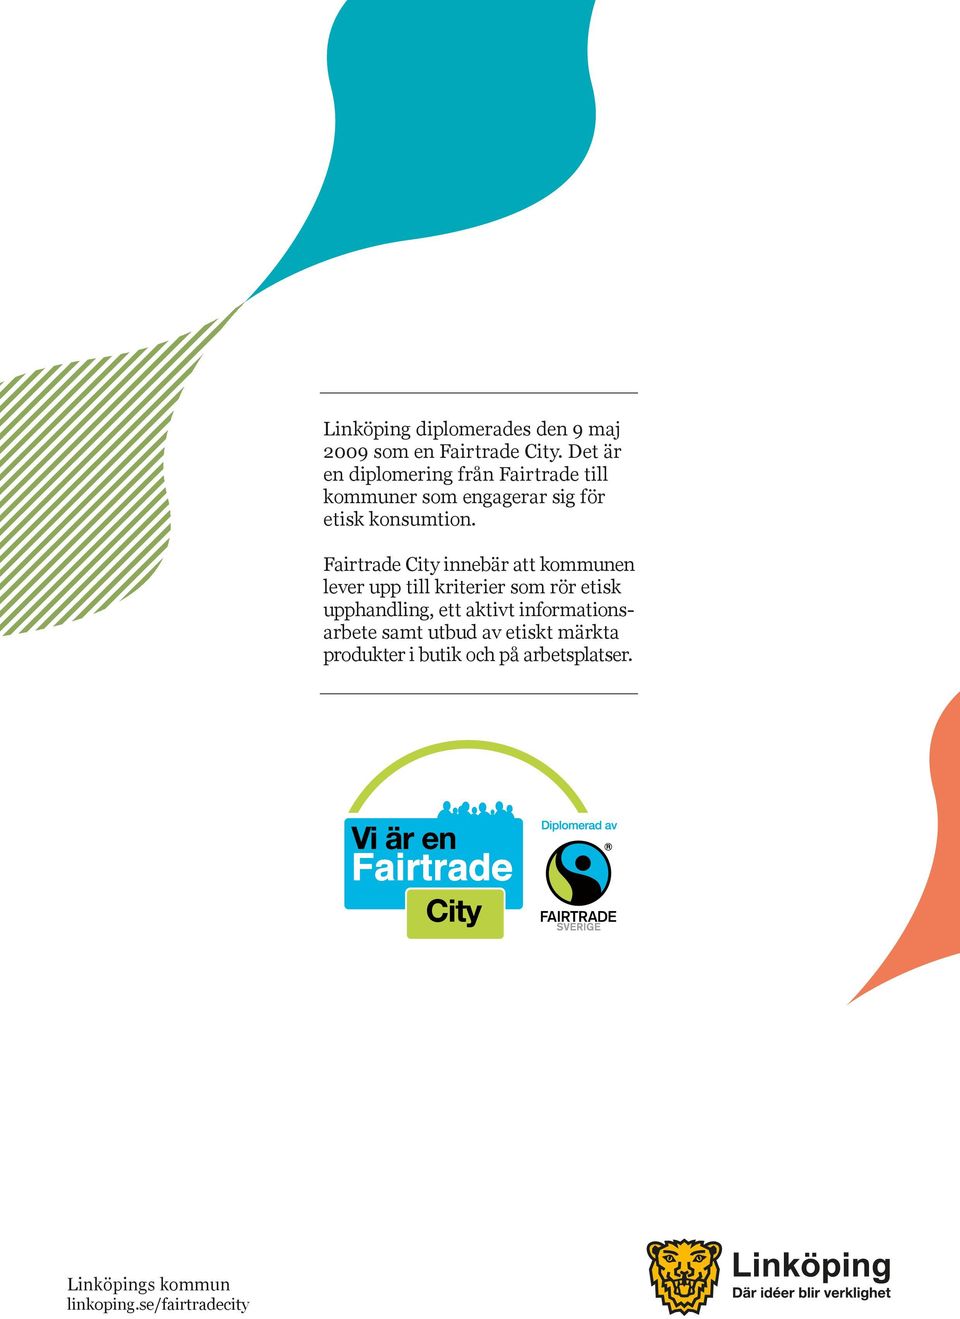 Fairtrade City innebär att kommunen lever upp till kriterier som rör etisk upphandling, ett